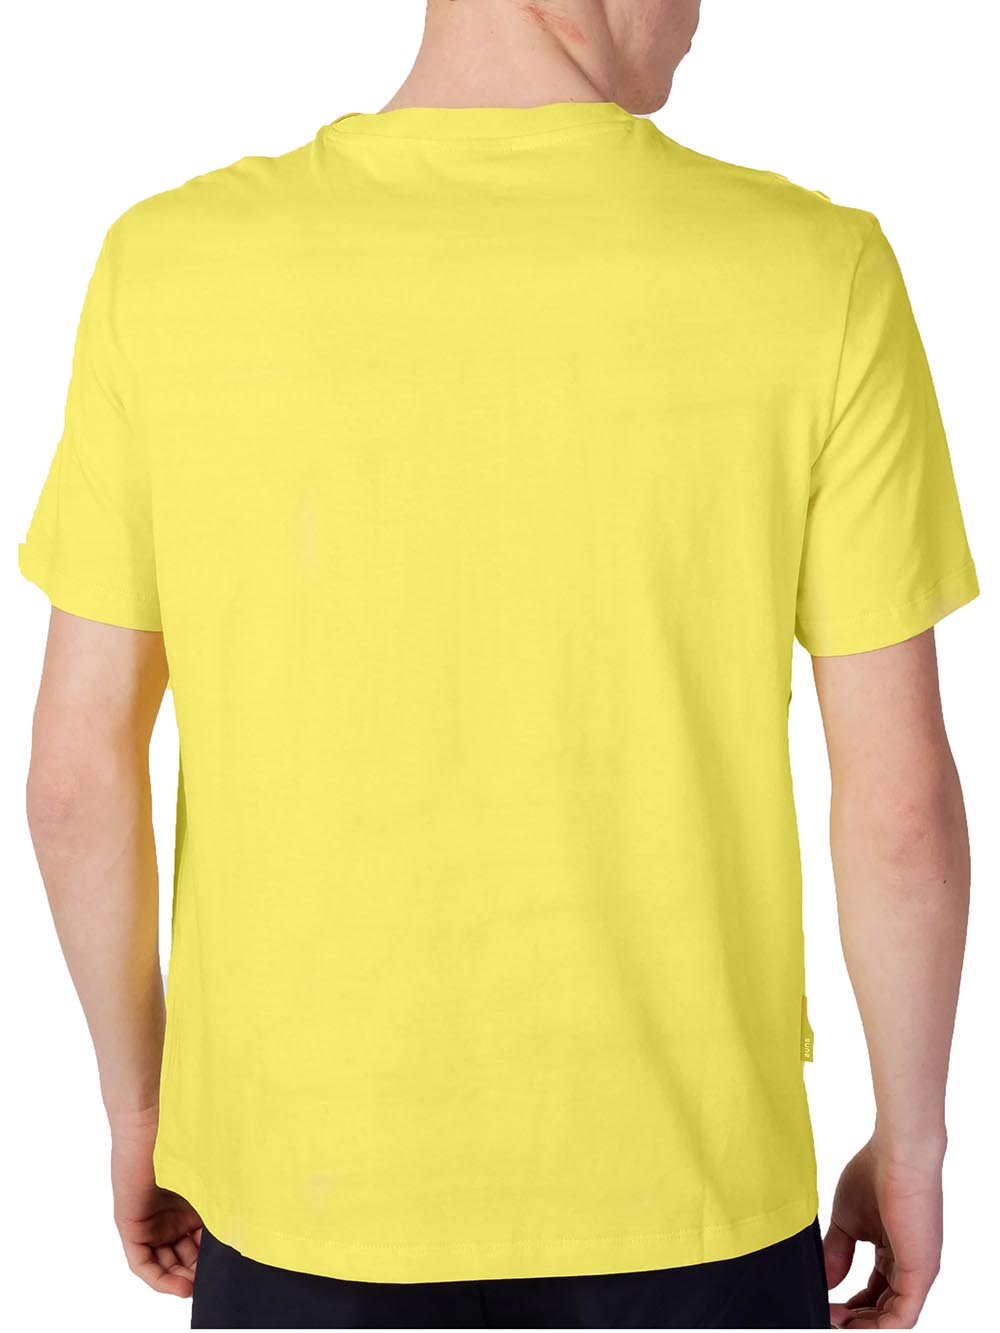 Suns T-shirt Uomo Giallo